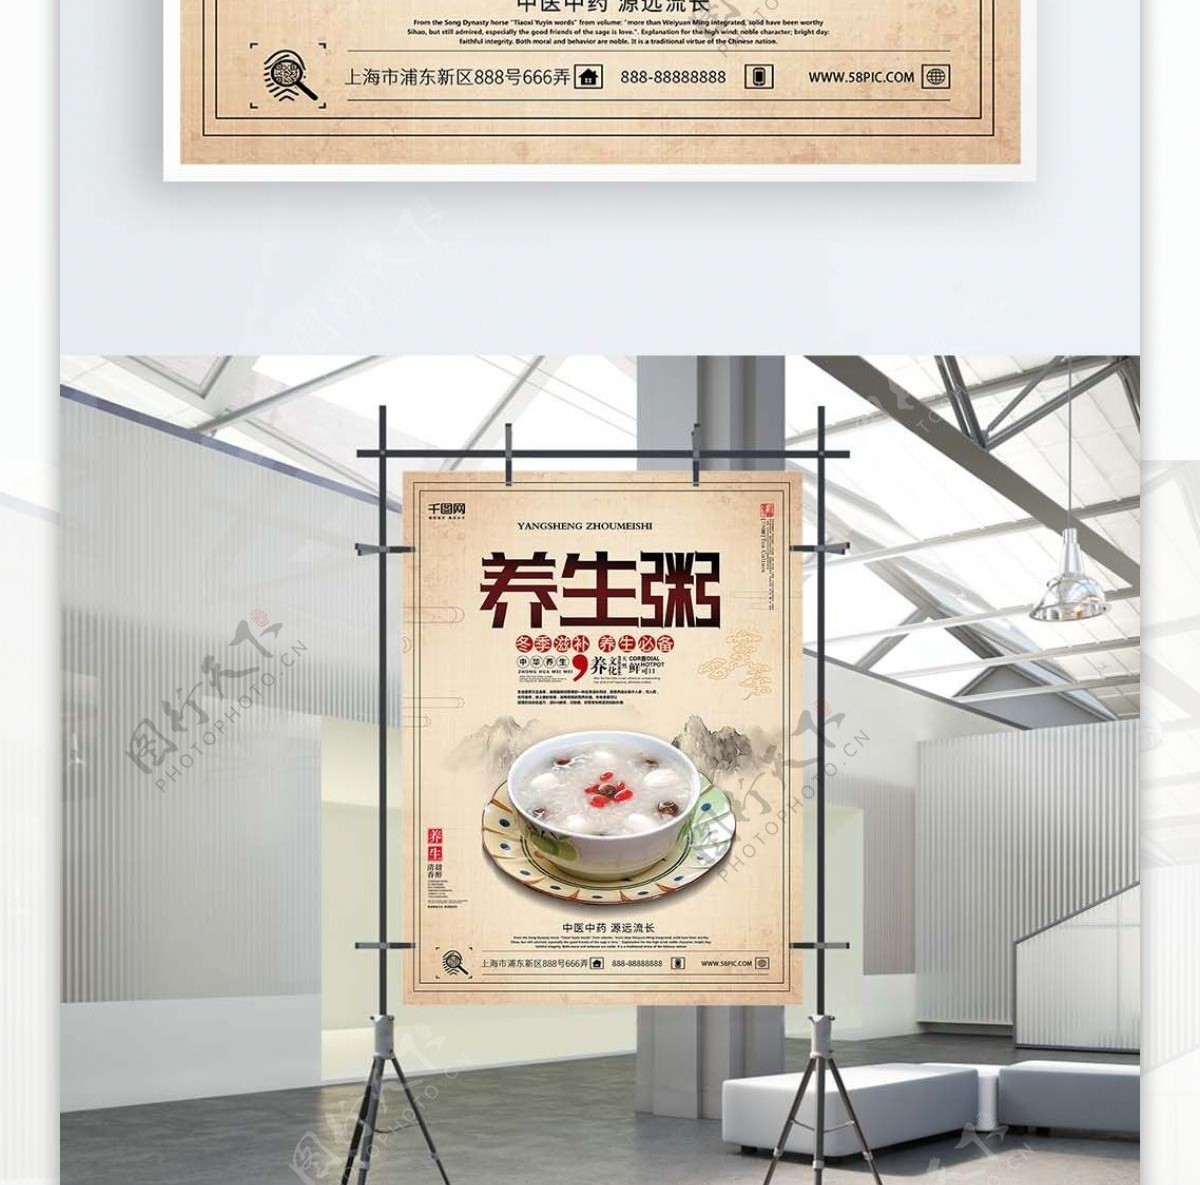 浅色养生中国风高端简洁养生粥海报设计